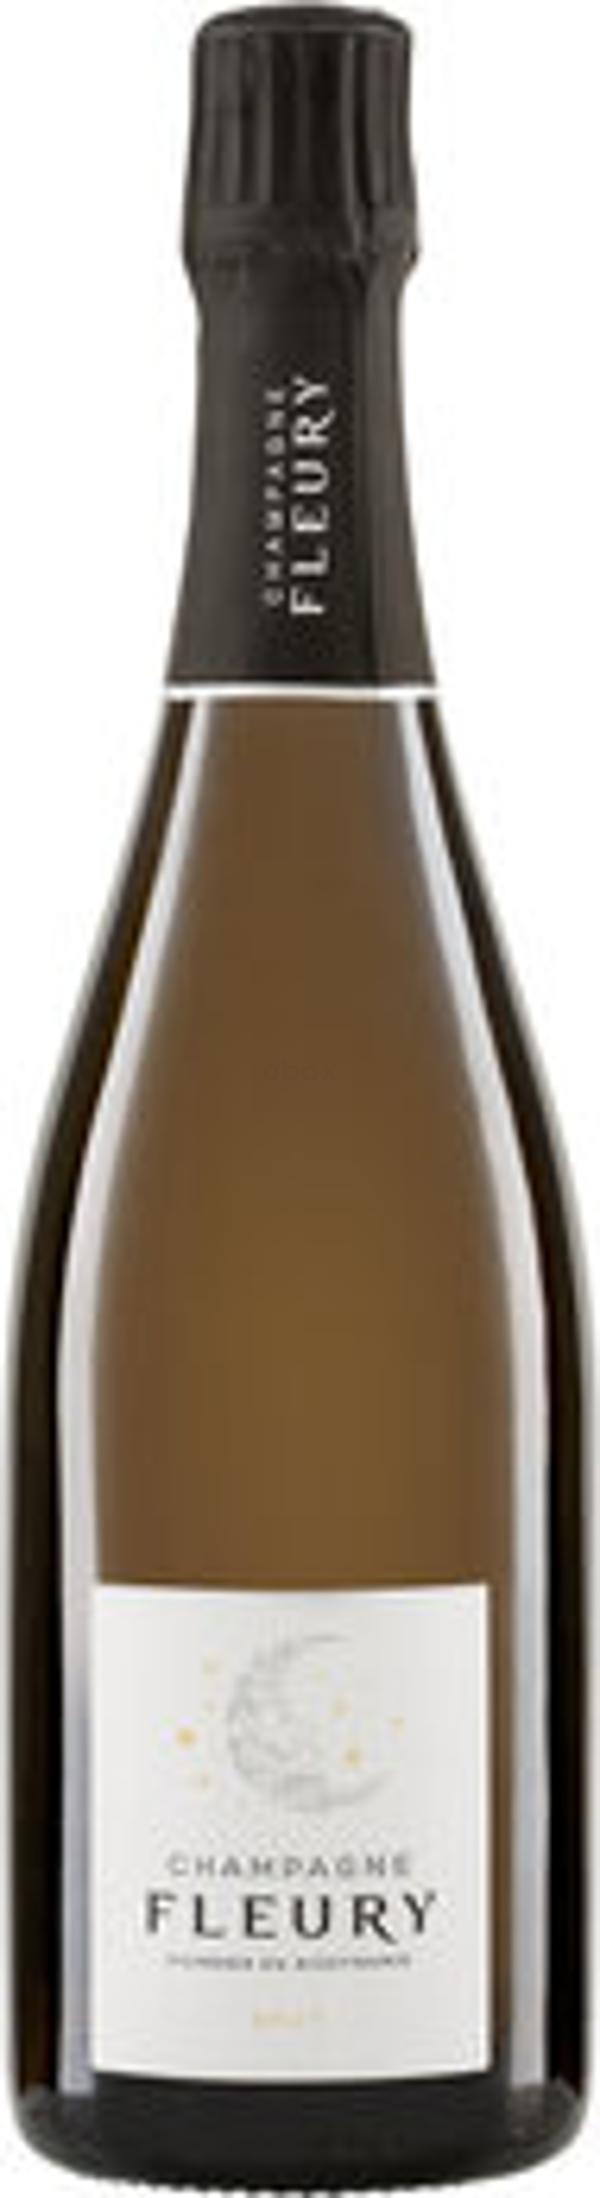 Produktfoto zu Champagne Brut EXCLUSIV Fleury 0,75l